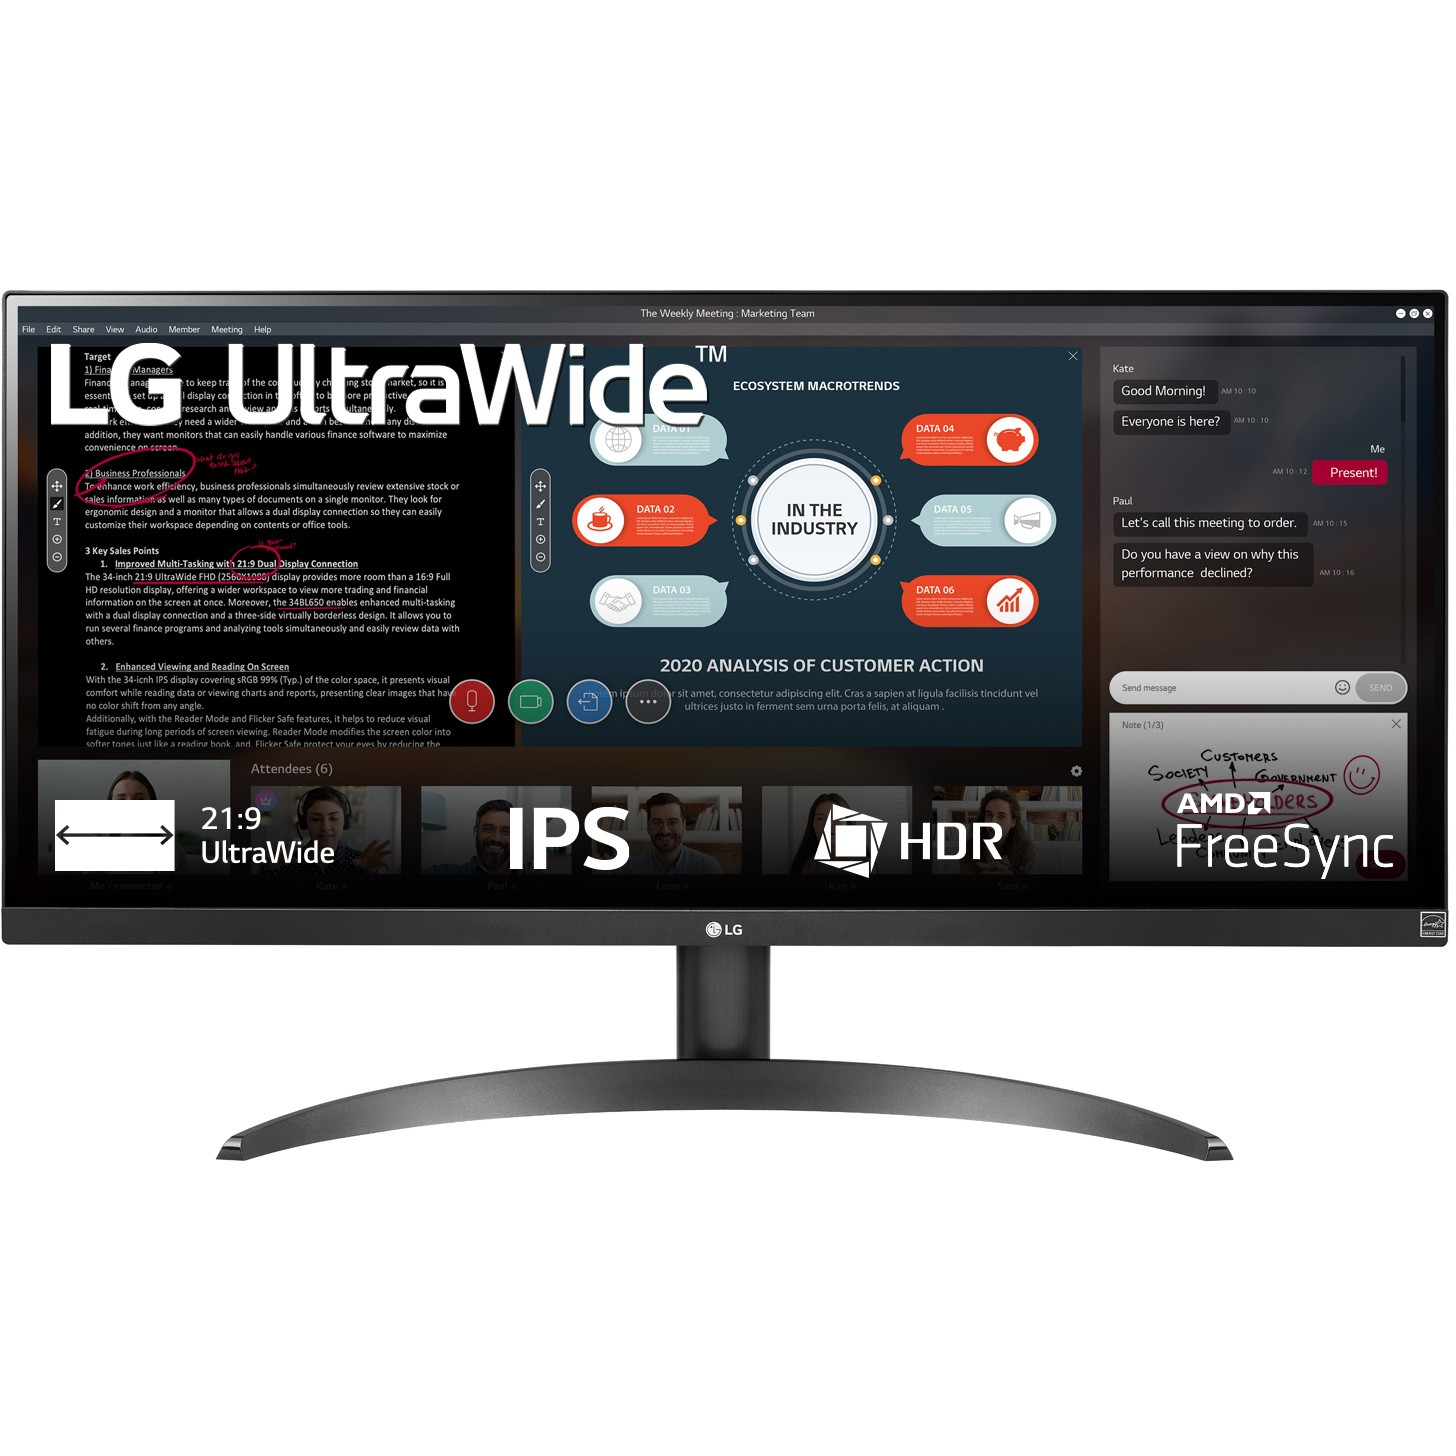 LG 29WP500-B computer monitor